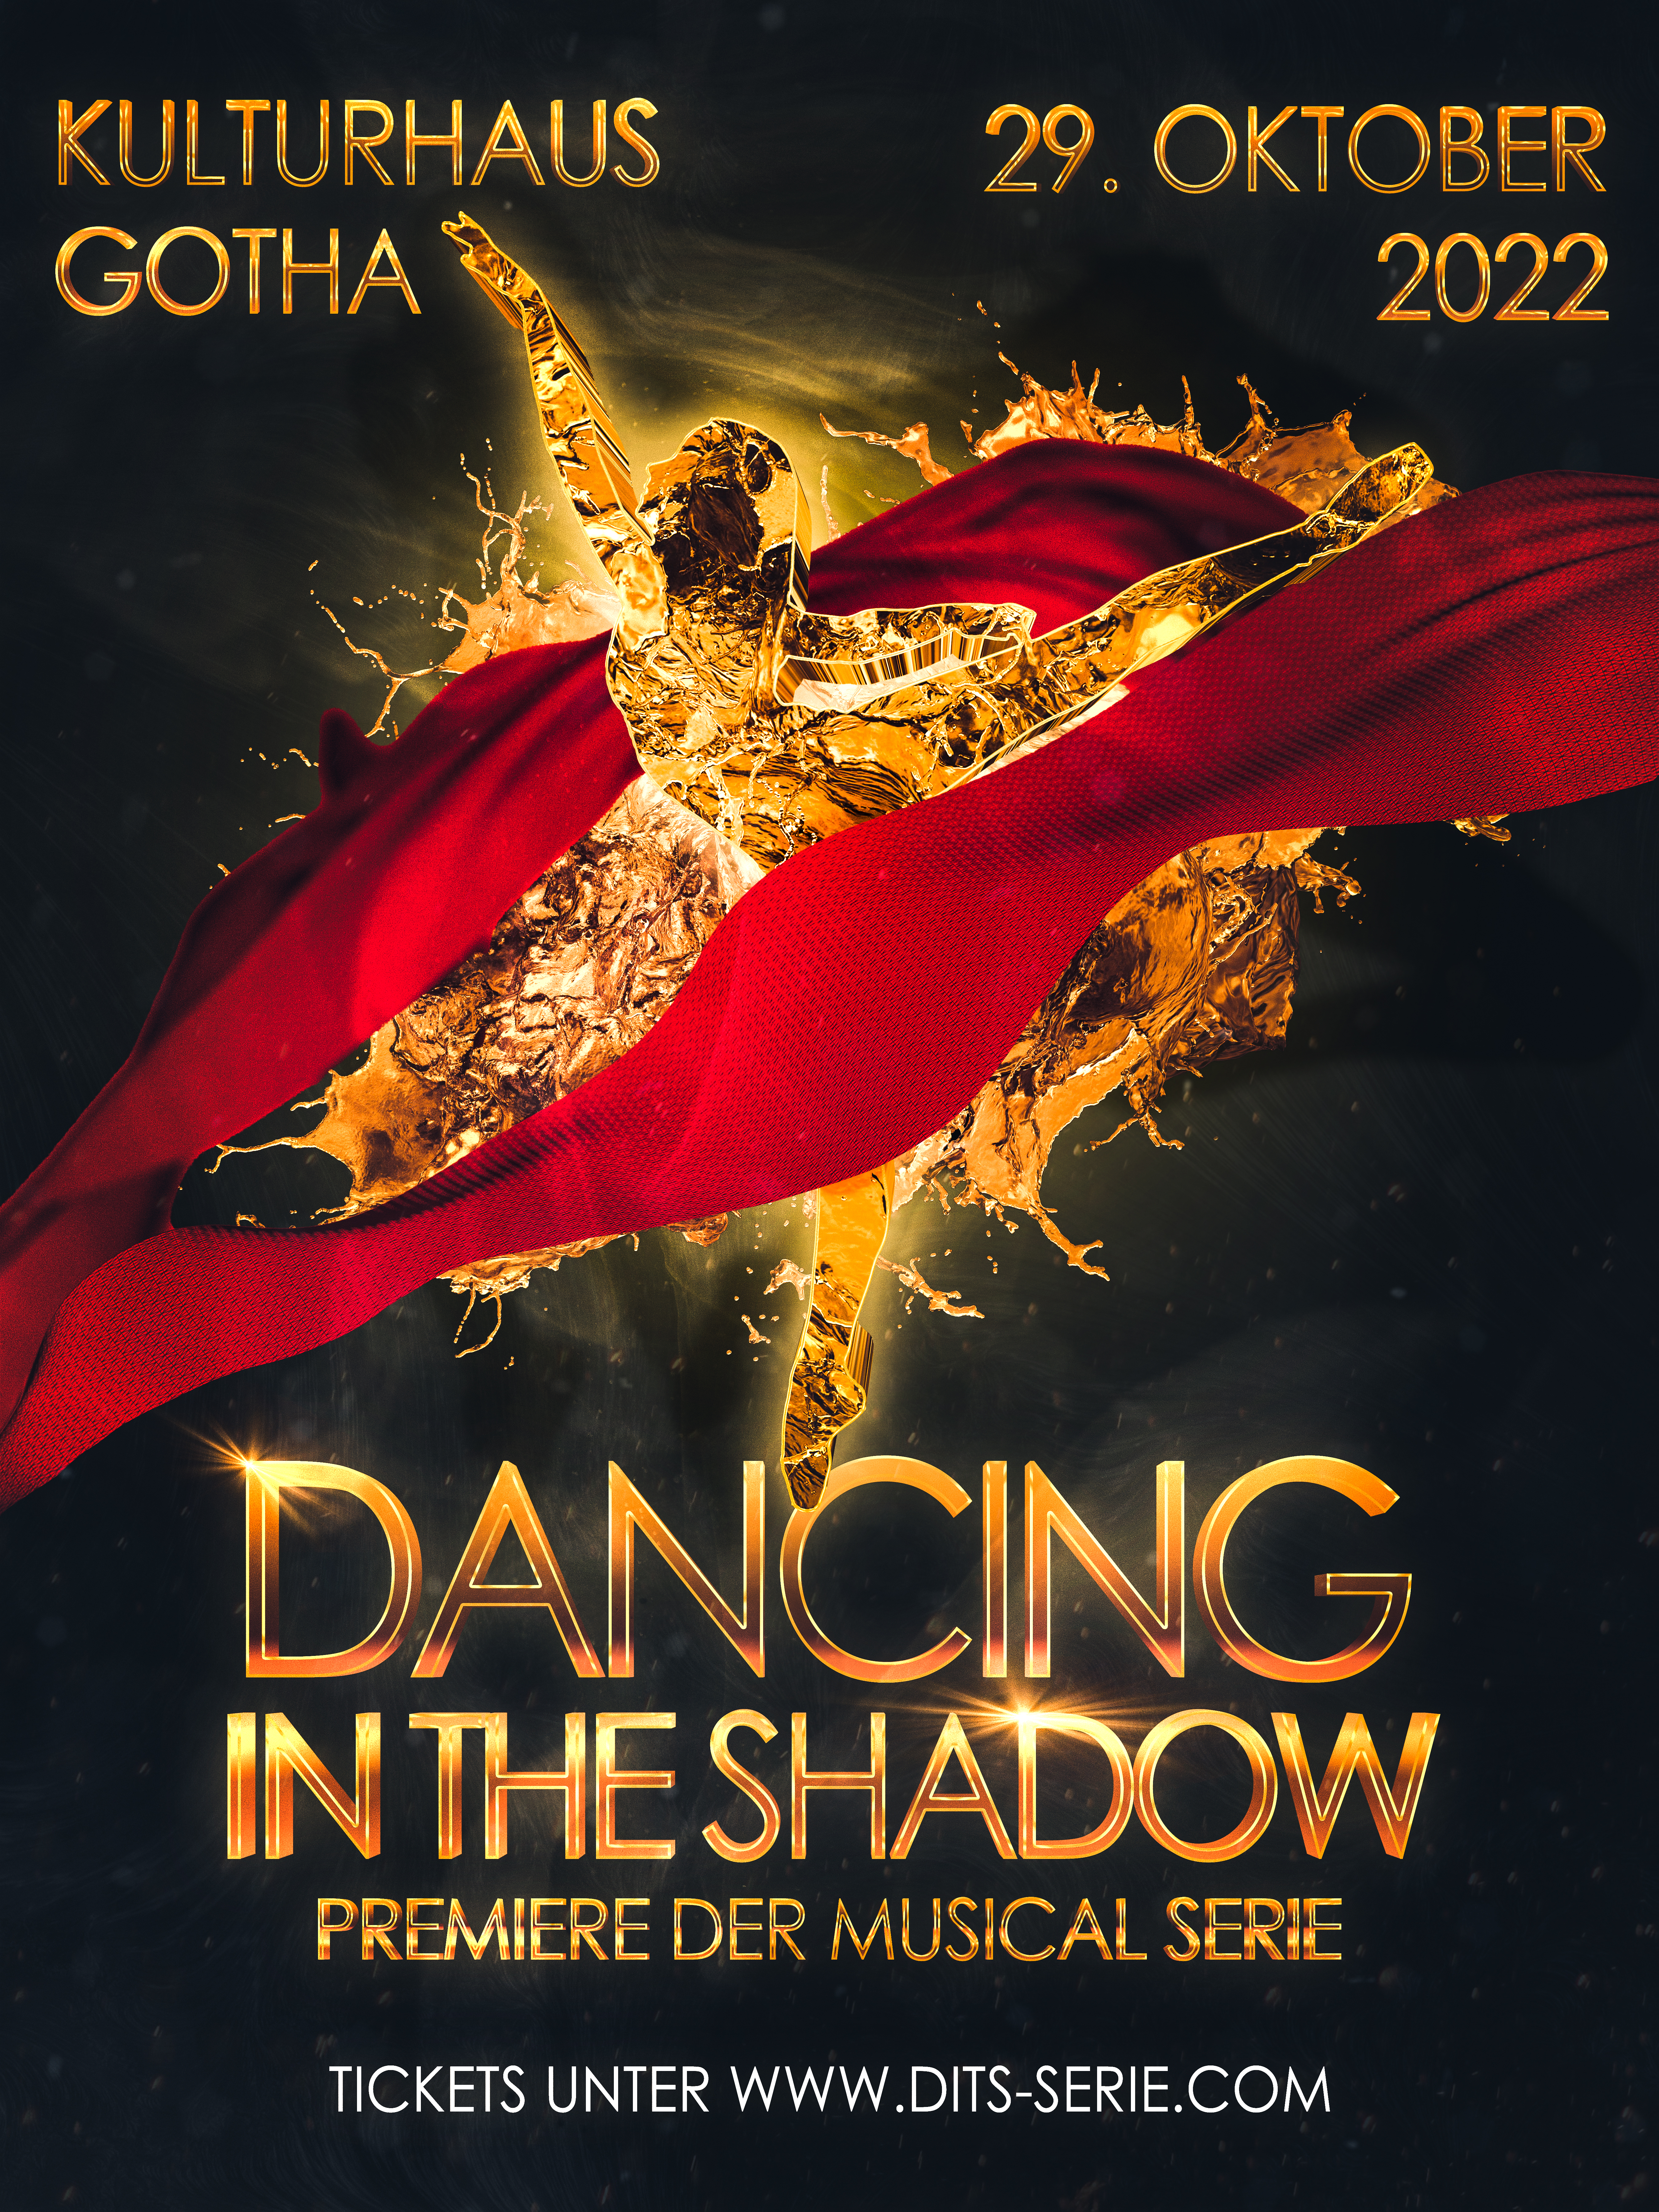 Optische Einladung zur Premiere der Musical Serie "Dancing in the Shadow"